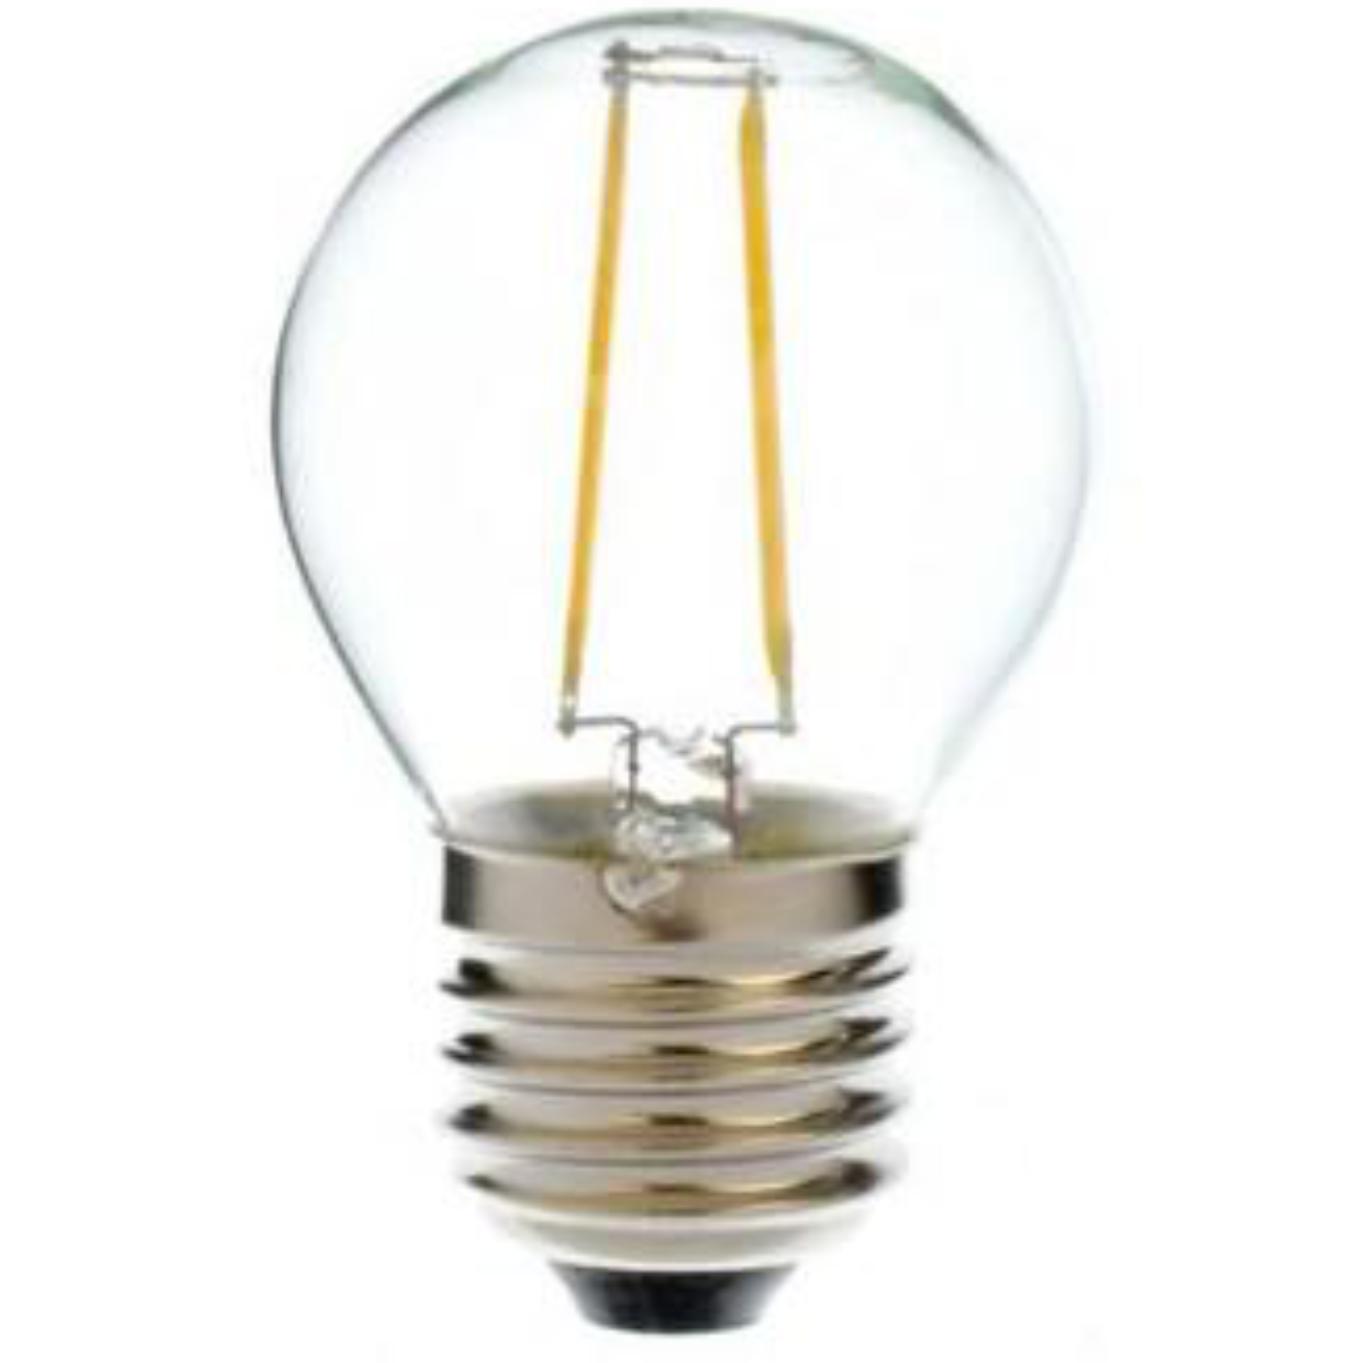 E27 filament led lamp - Tronix